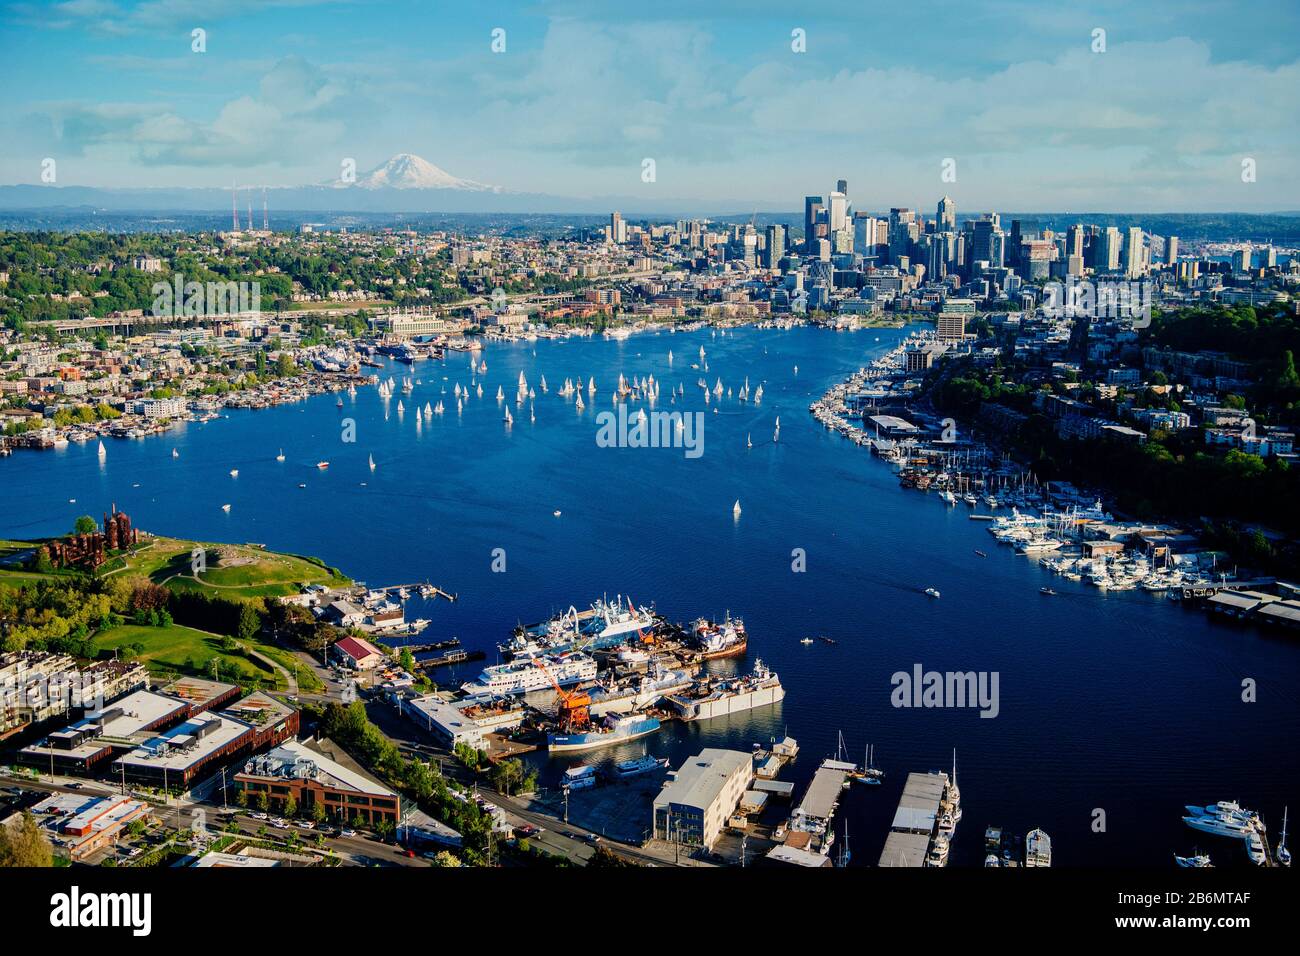 Vista aérea de Eagle Harbor, la ciudad de Seattle y Mount Ranier en el fondo, Washington State, EE.UU Foto de stock